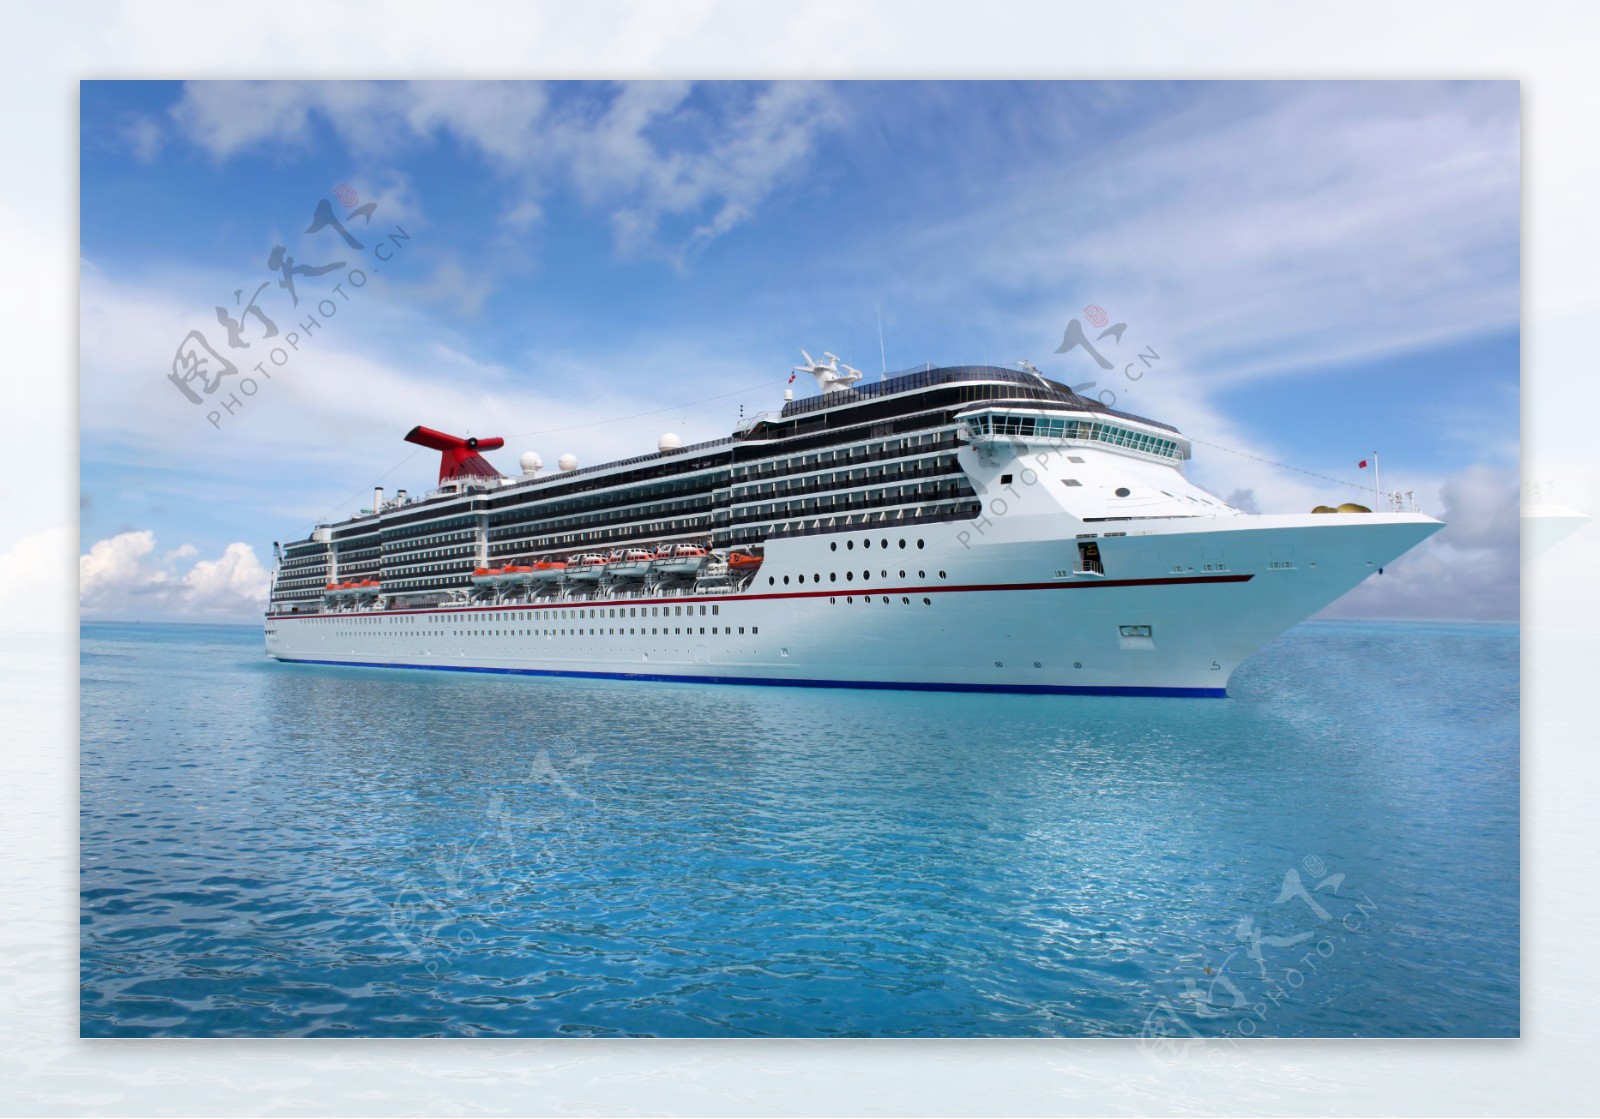 丽思卡尔顿游轮推出加勒比海域陆上游览活动_资讯频道_悦游全球旅行网